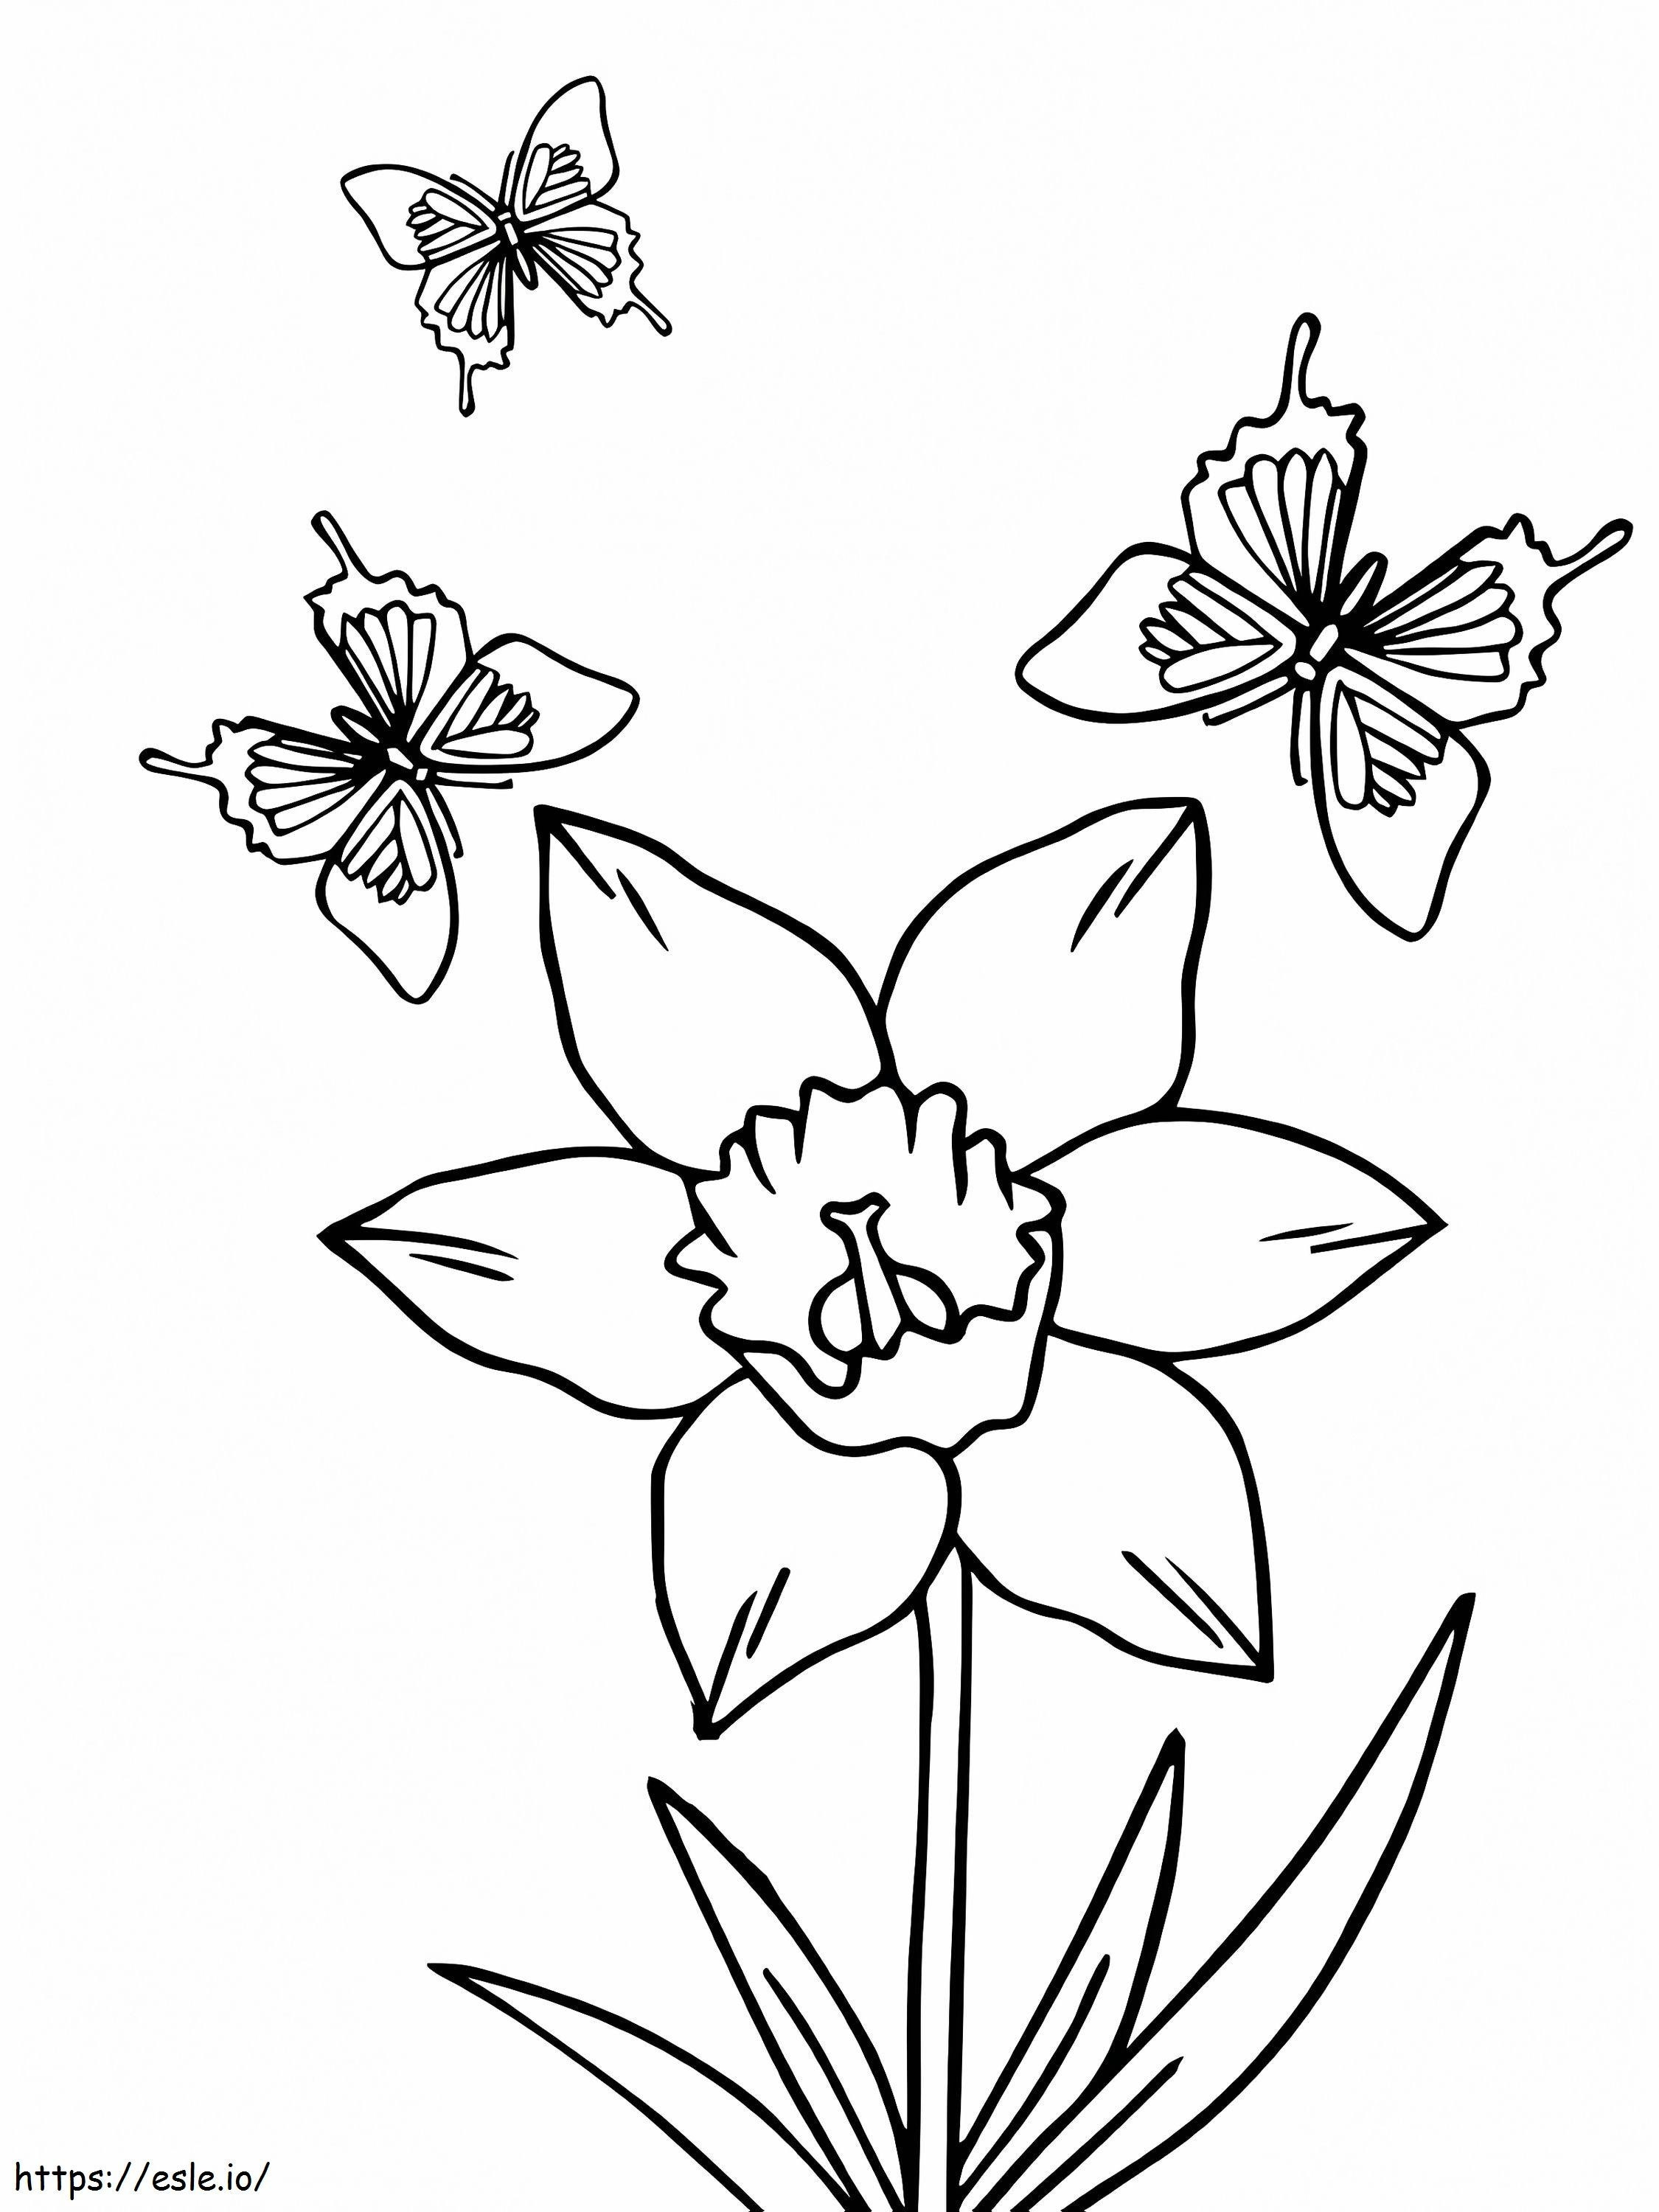 Üç Kelebek Ve Nergis Çiçeği boyama